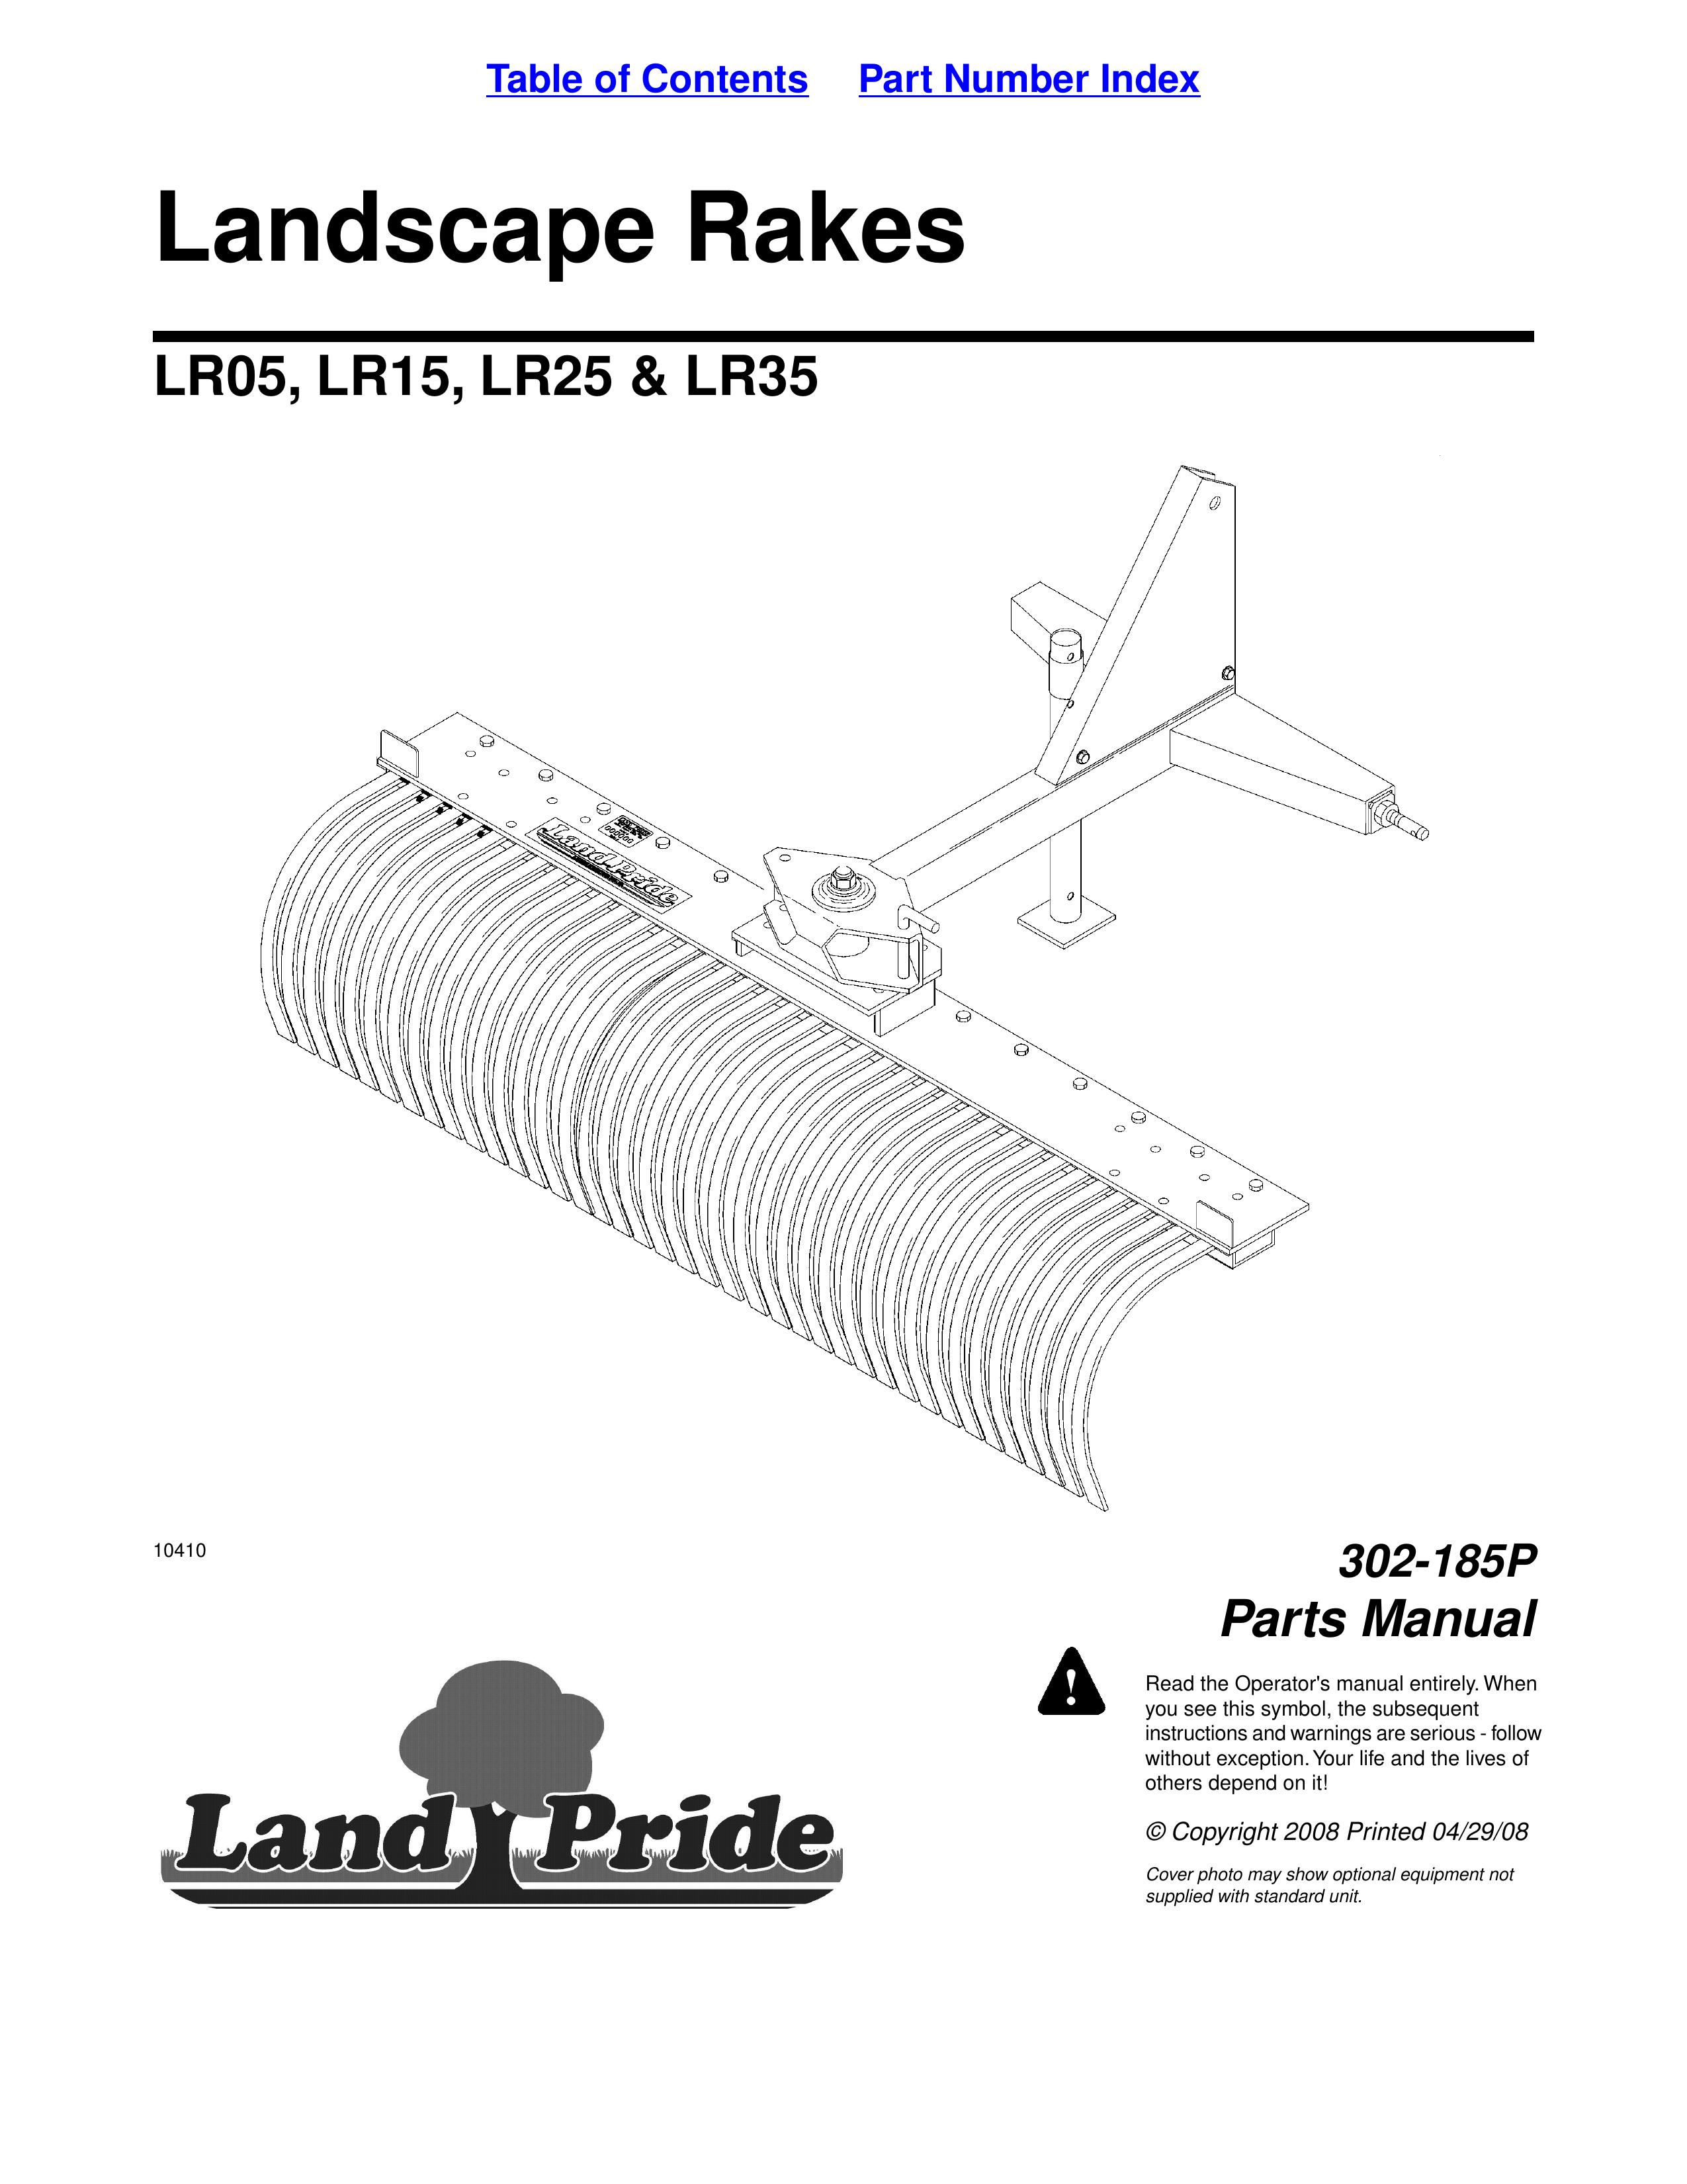 Land Pride LR05 Wok User Manual